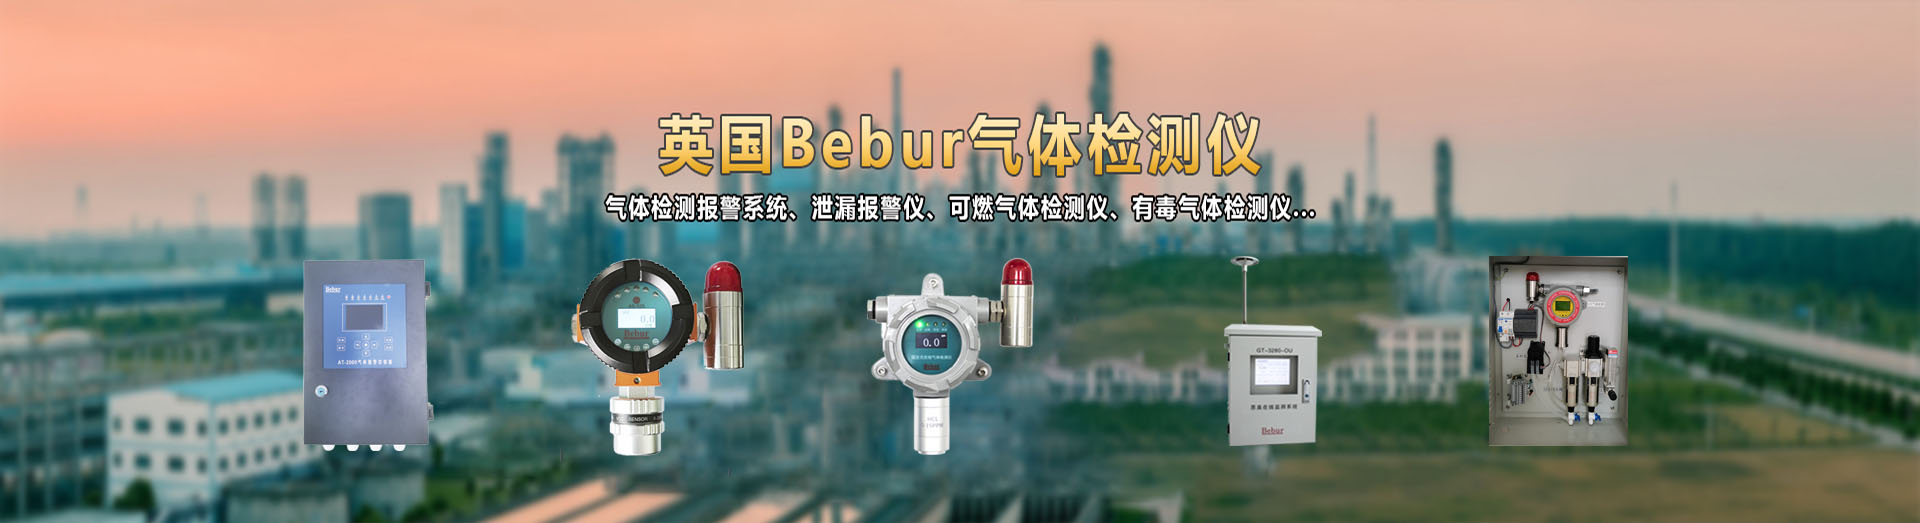 英国Bebur品牌便携式臭氧检测仪系列产品